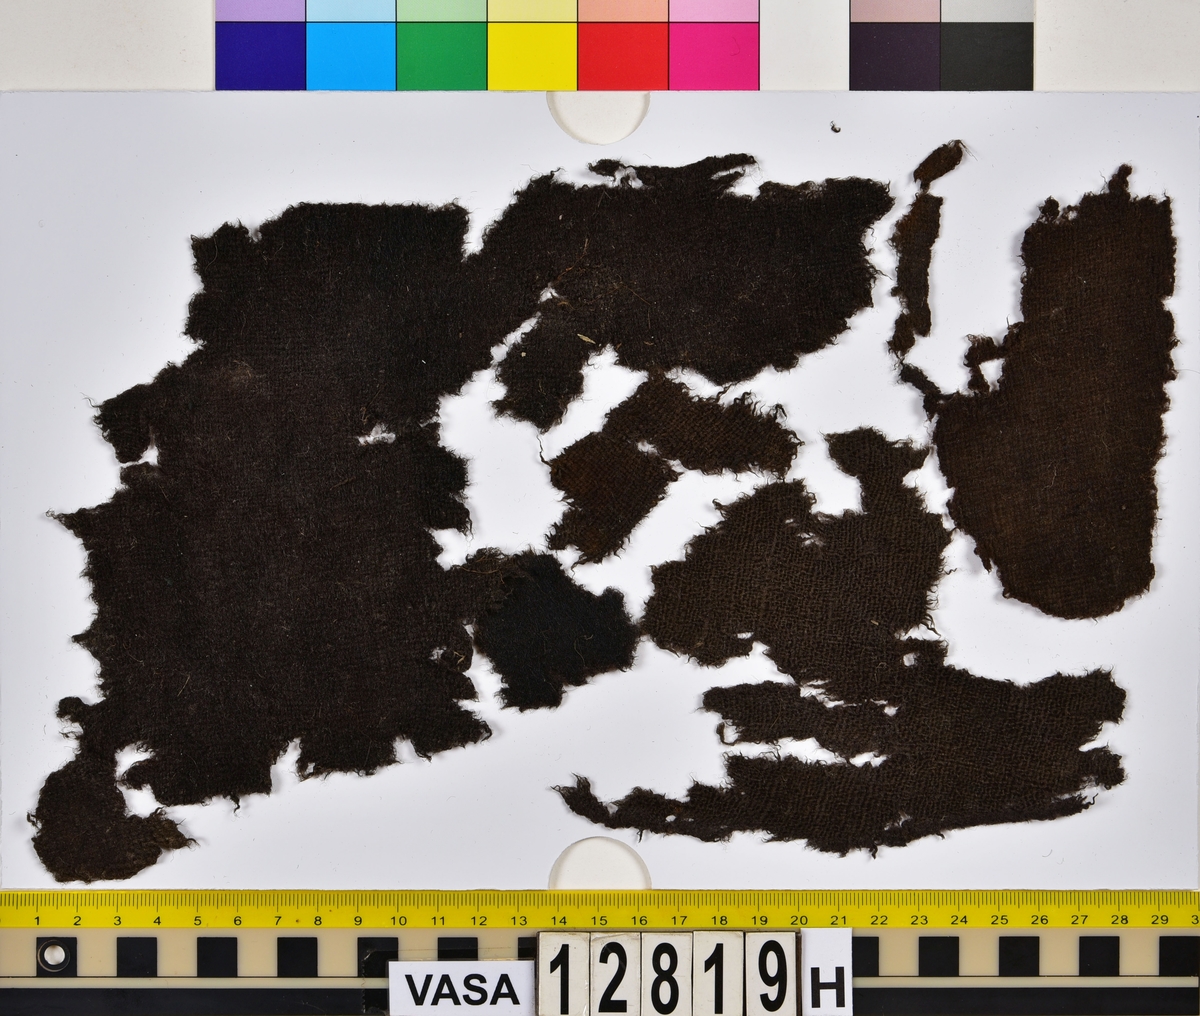 Textilfragment.
34 textilfragment uppdelade på fyndnummer 12819a-h.
Fnr 12819a består av 7 filtade fragment av ull eller bäver.
Fnr 12819b är ett vävt och valkat fragment av ull.
Fnr 12819c är ett fragment av ull vävt i 2/1-kypert samt valkat på ena sidan.
Fnr 12819d består av fyra fragment av ull vävda i tuskaft. Ett av fragmenten har en tydlig originalkant bevarad.
Fnr 12819e består av ett fragment av ull vävt i tuskaft.
Fnr 12819f består av 10 fragment av ull vävda i tuskaft. Ett av fragmenten har en tydlig originalkant bevarad.
Fnr 12819g är två fragment av ull vävda i 2/1-kypert. 
Fnr 12819h består av 8 fragment av ull vävda i tuskaft. Ett av fragmenten har många vävfel (hoppor). Ett av fragmenten har en tydlig originalkant bevarad.